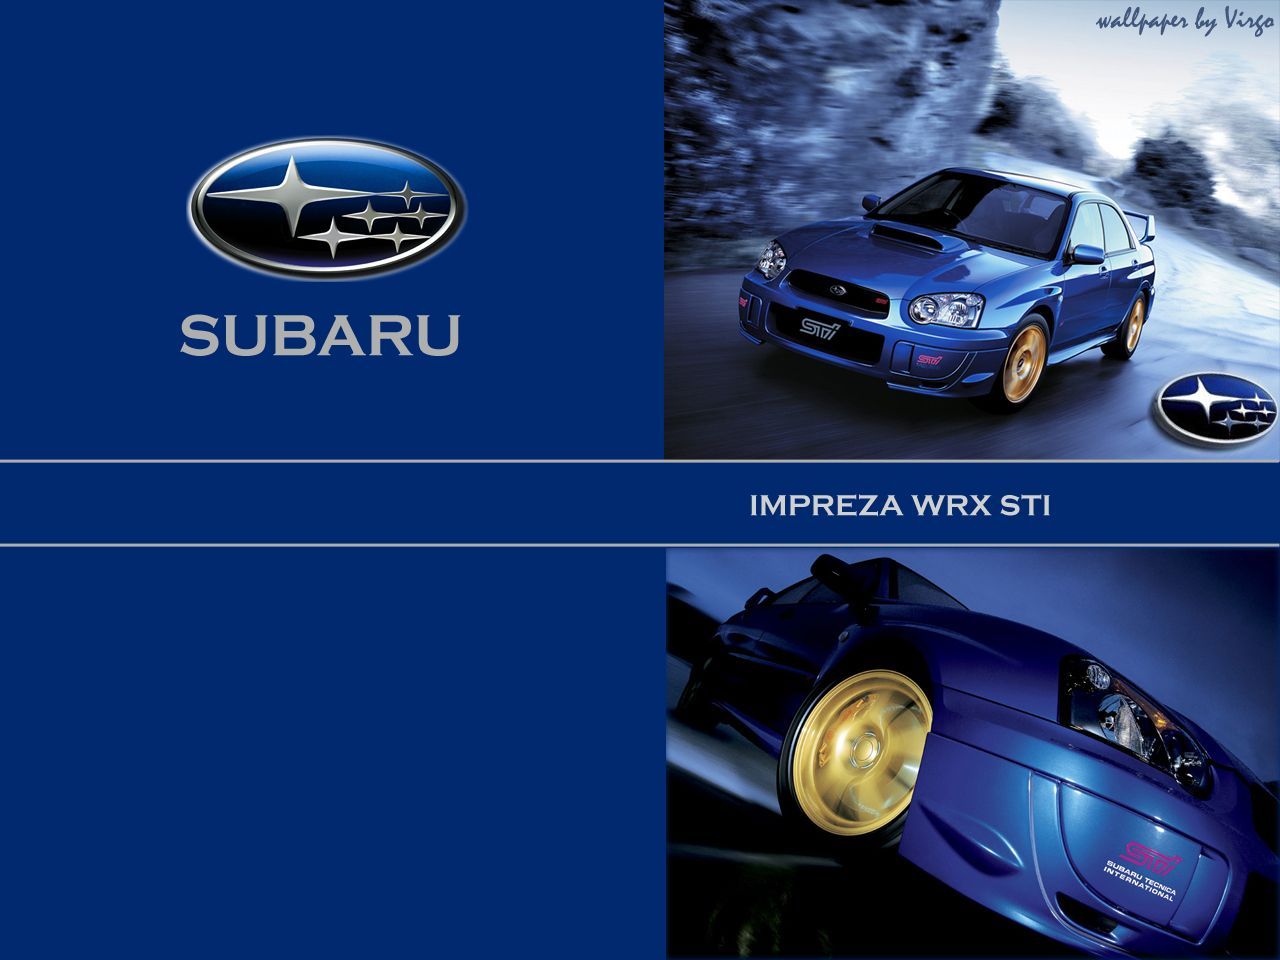 Subaru Impreza WRX STI Wallpaper Full HD Free 16657 Full HD ...